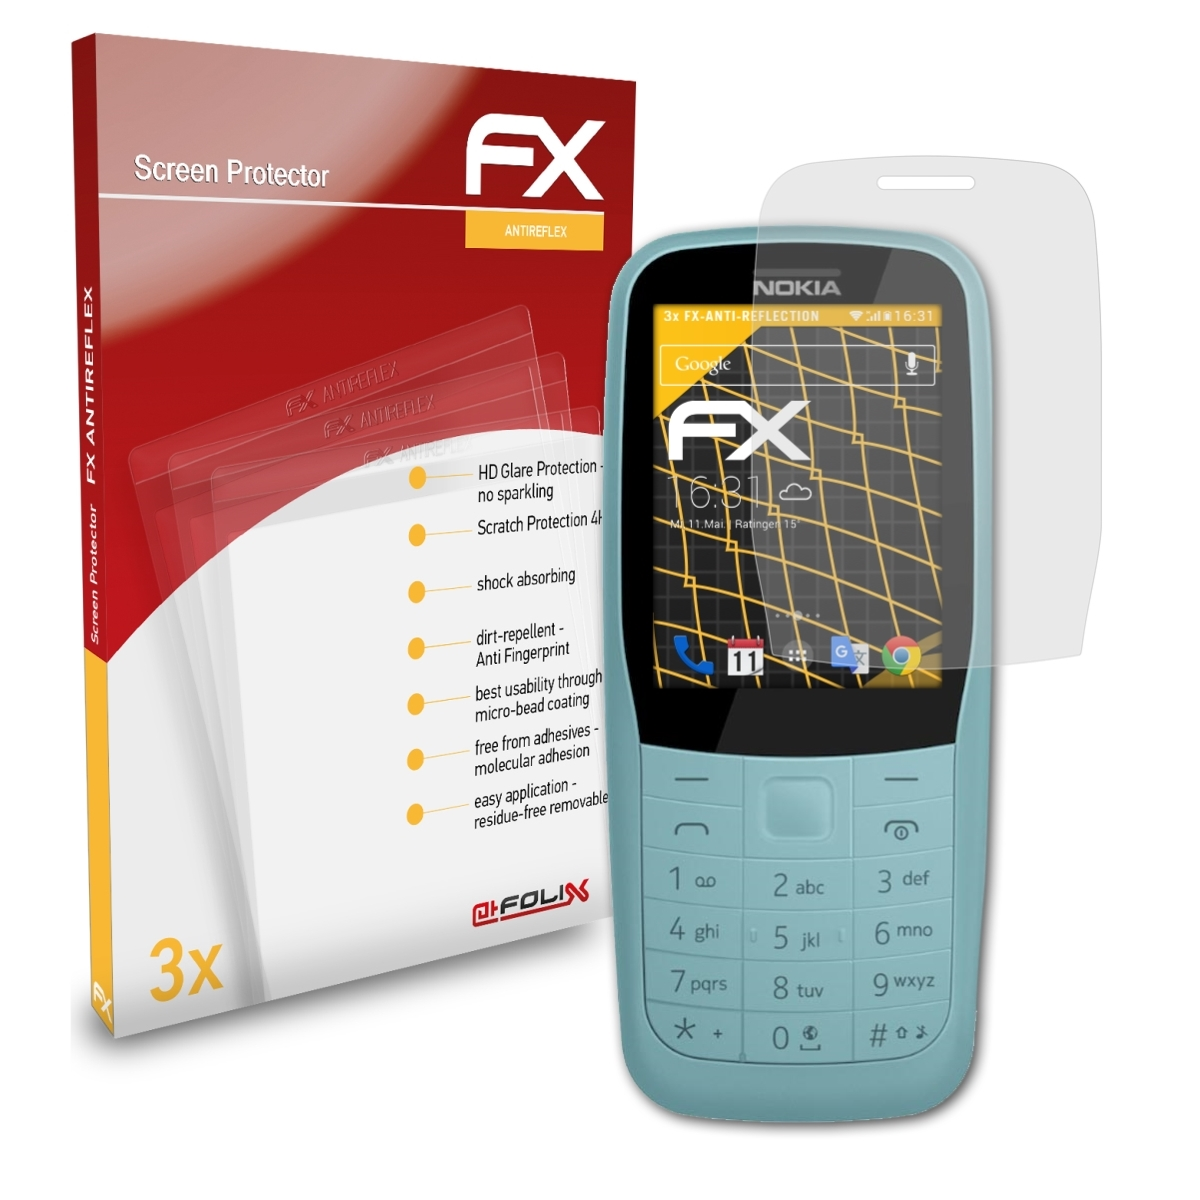 ATFOLIX 3x (2019)) 220 Nokia Displayschutz(für FX-Antireflex 4G